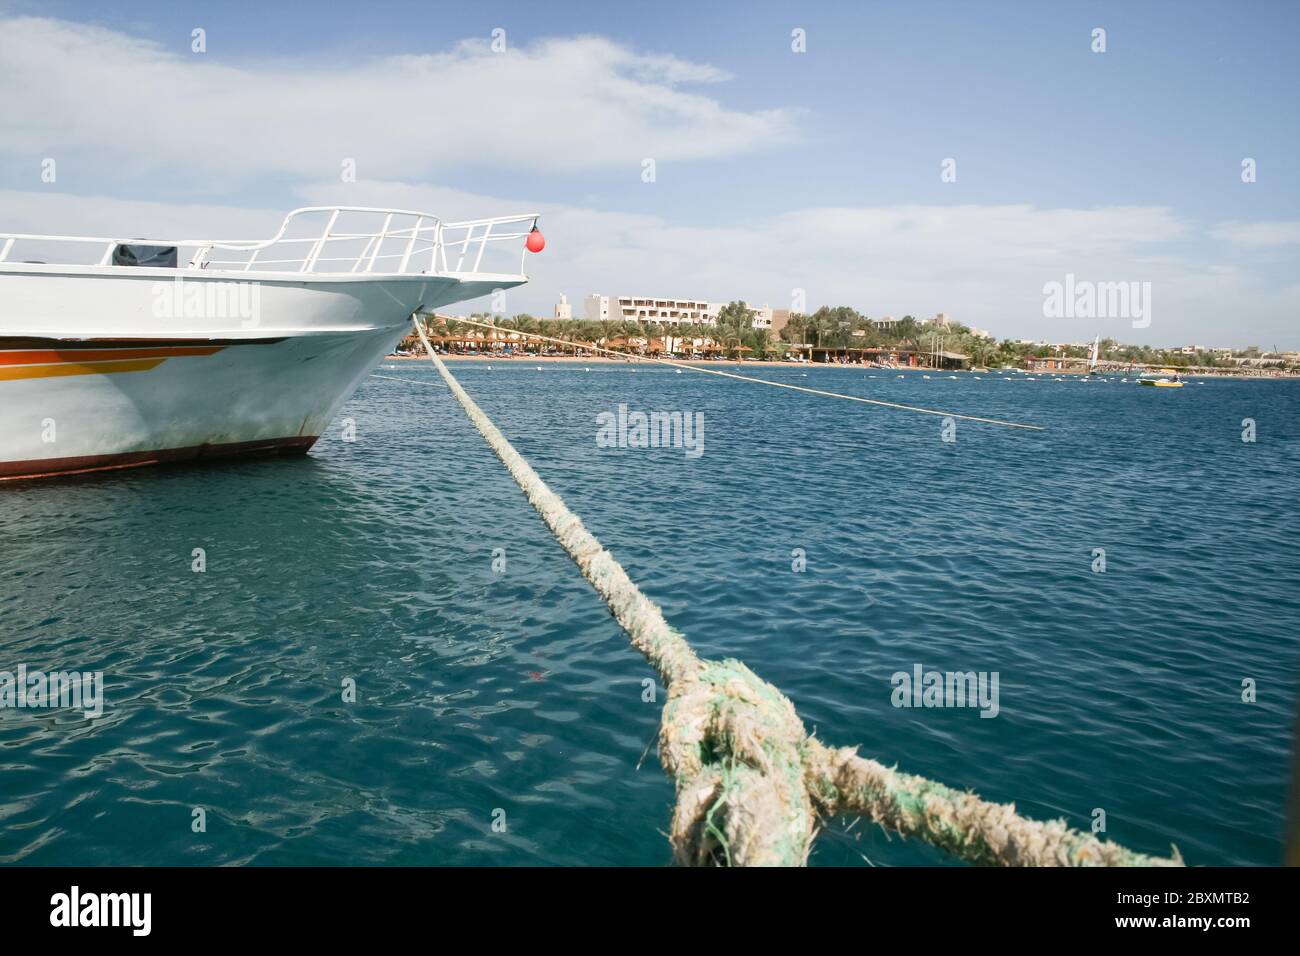 Jacht mit Anker. Vorderansicht des Bootes, das in einem Yachthafen festgemacht ist. Ägypten Stockfoto